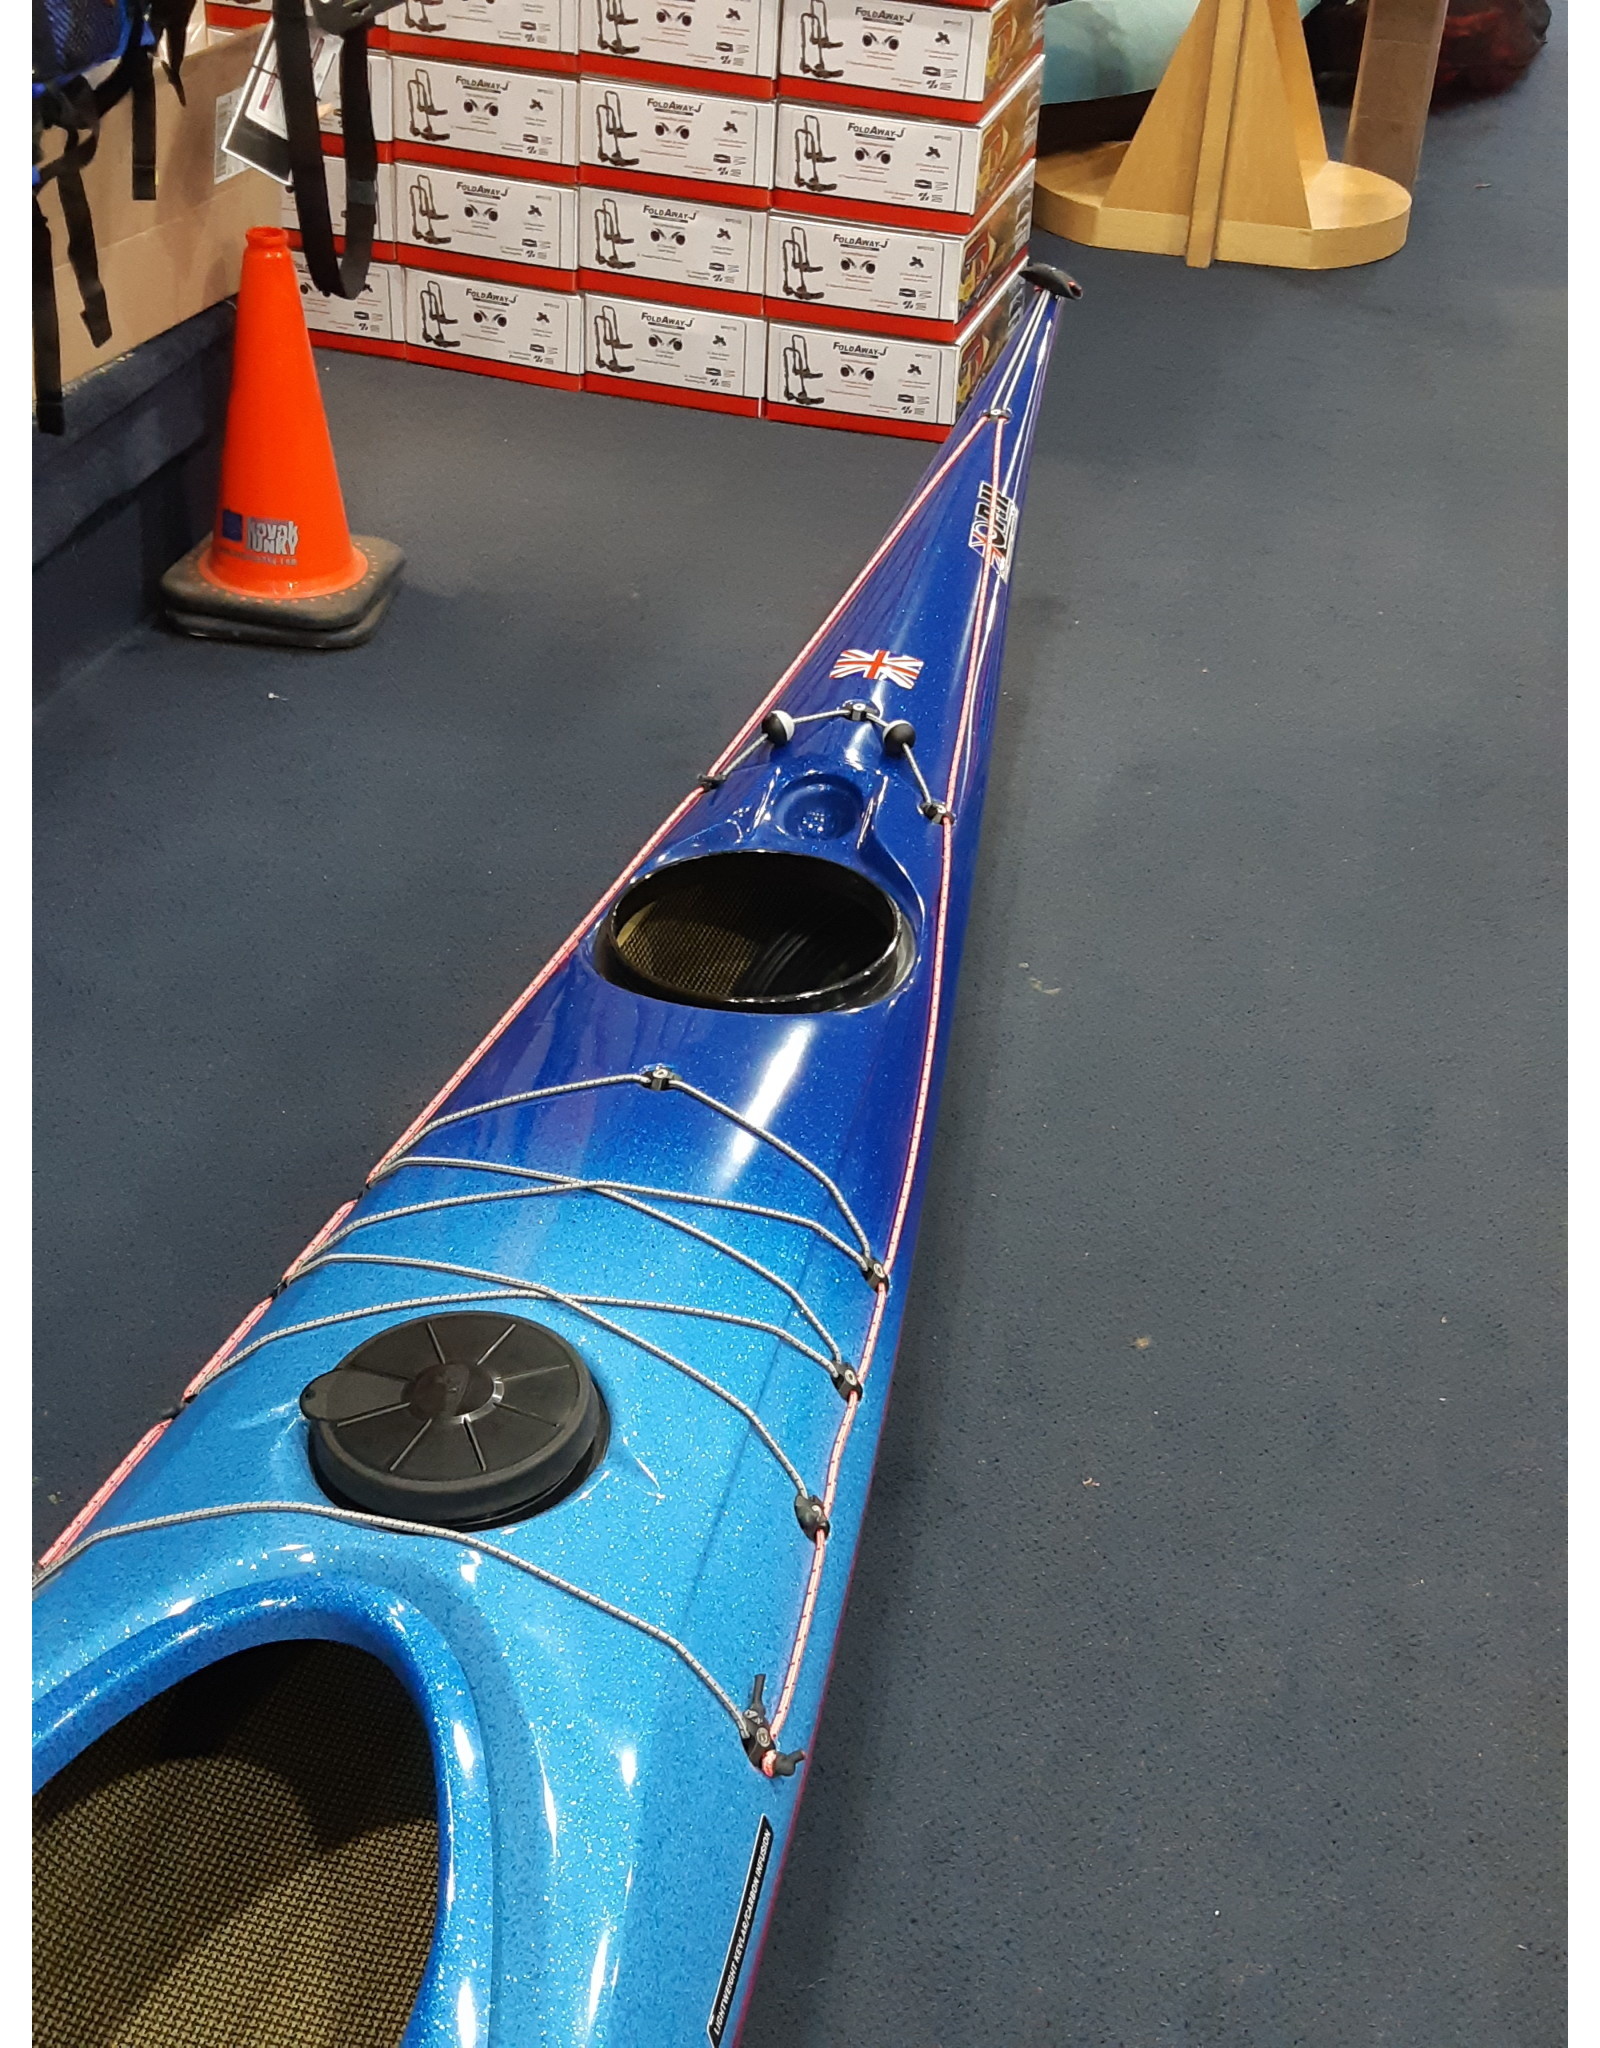 P&H Custom Sea Kayaks P&H kayak Cetus LV Lightweight Kevlar/Carbon Metallic Fade Blue to Fushia/White/Fushia